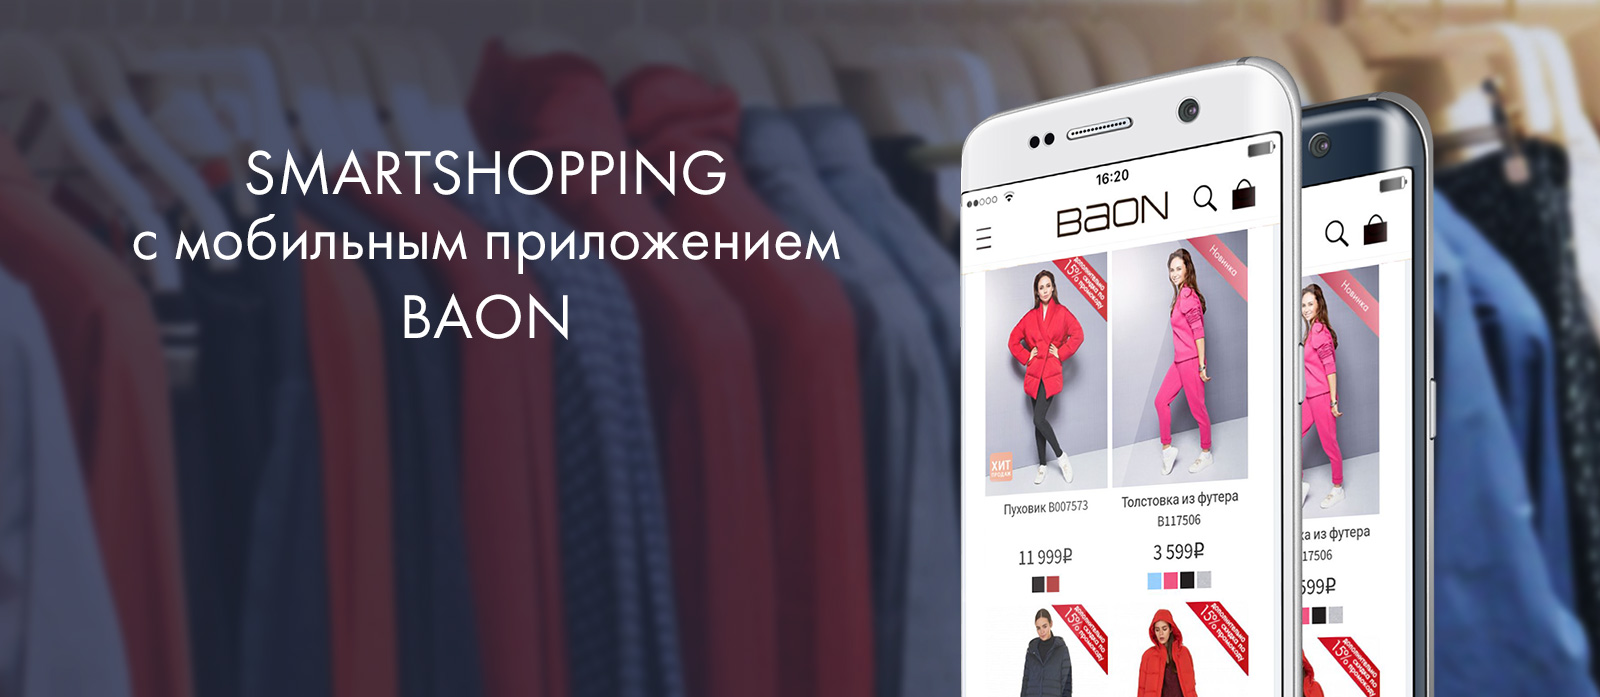 Баон Магазин Одежды Официальный Сайт Каталог